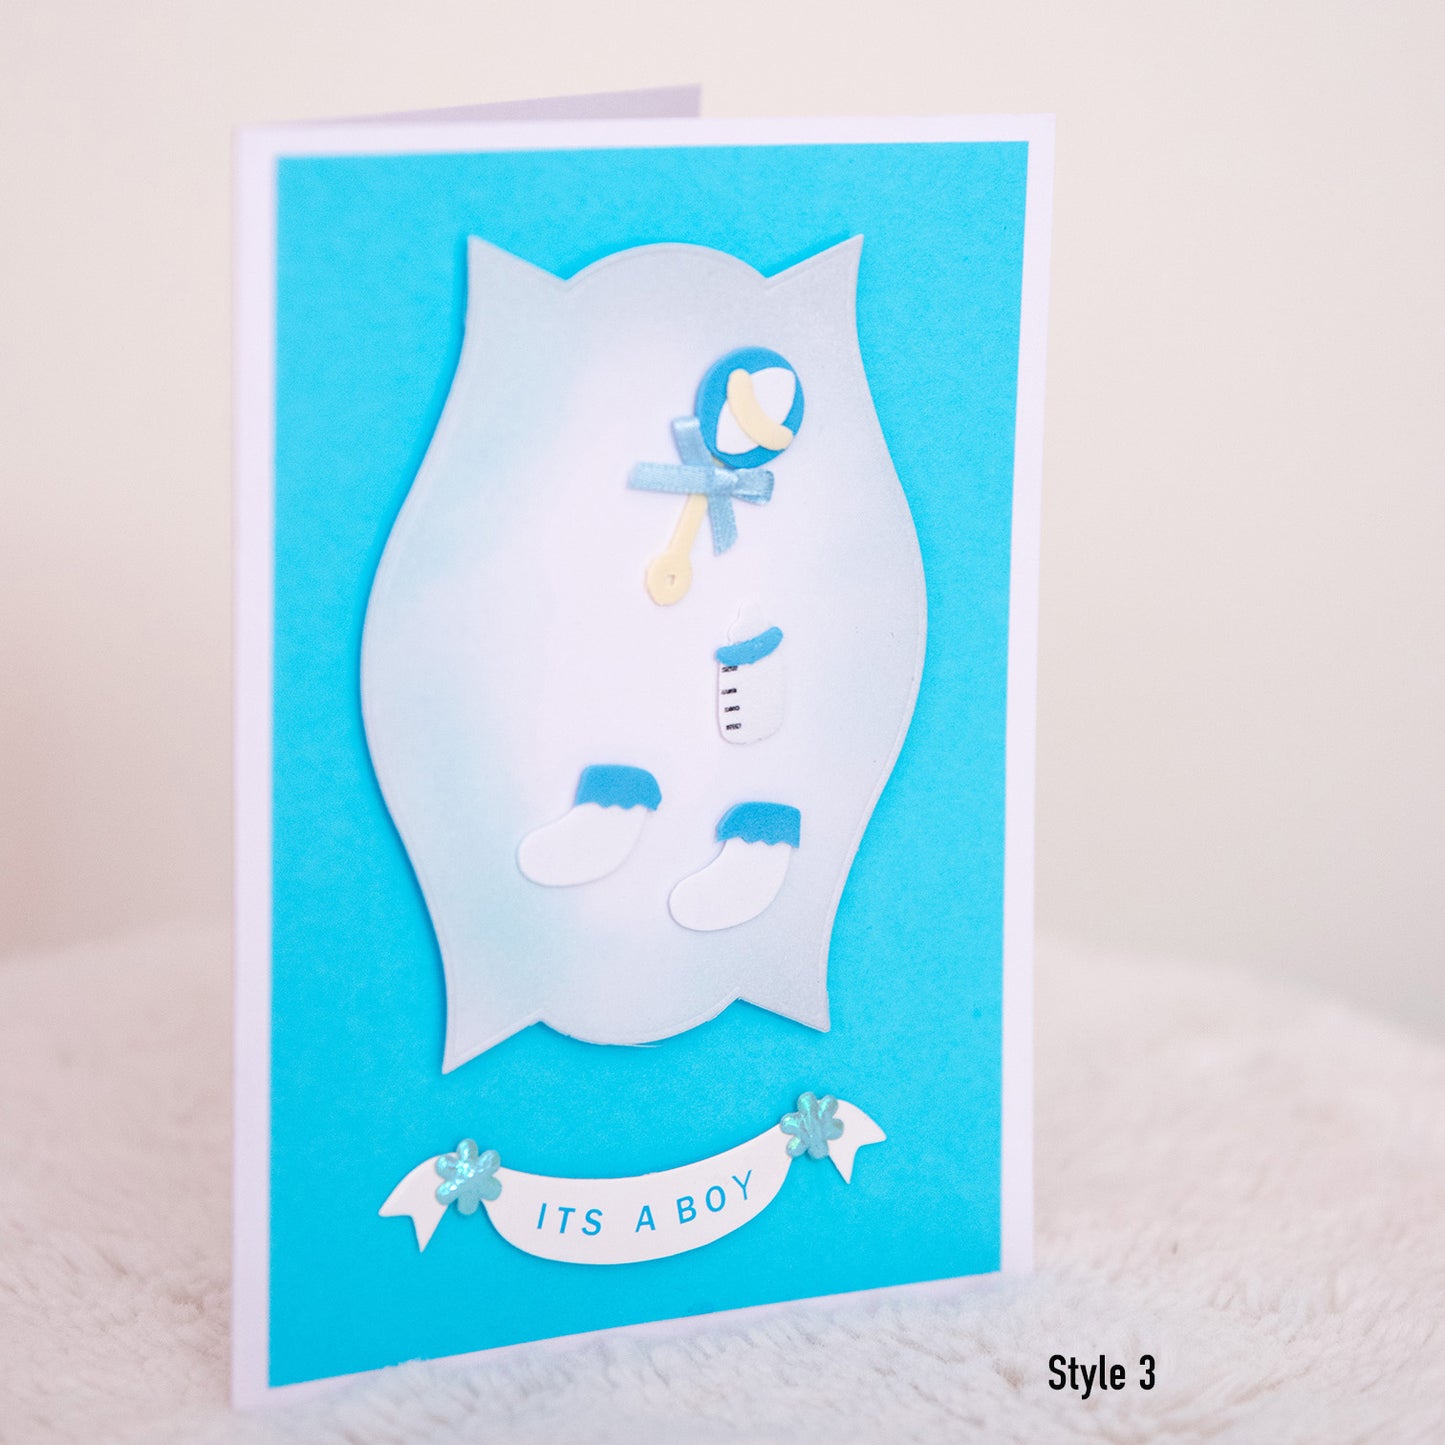 "It's a Boy” greeting card